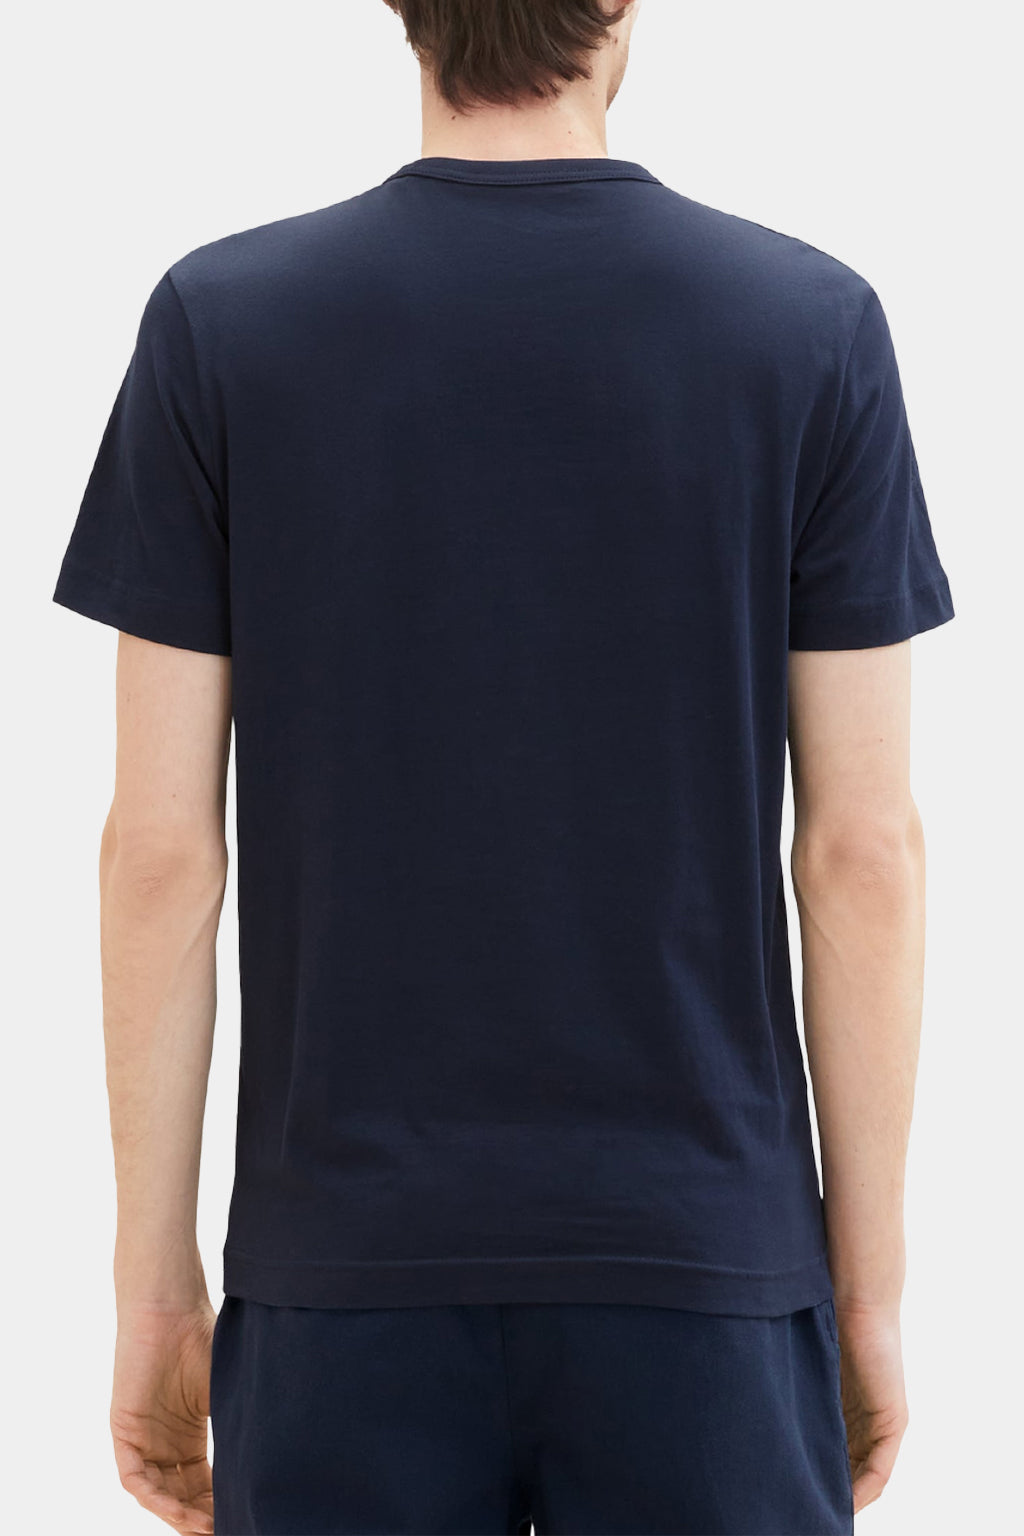 Tom Tailor - Men's T-shirt